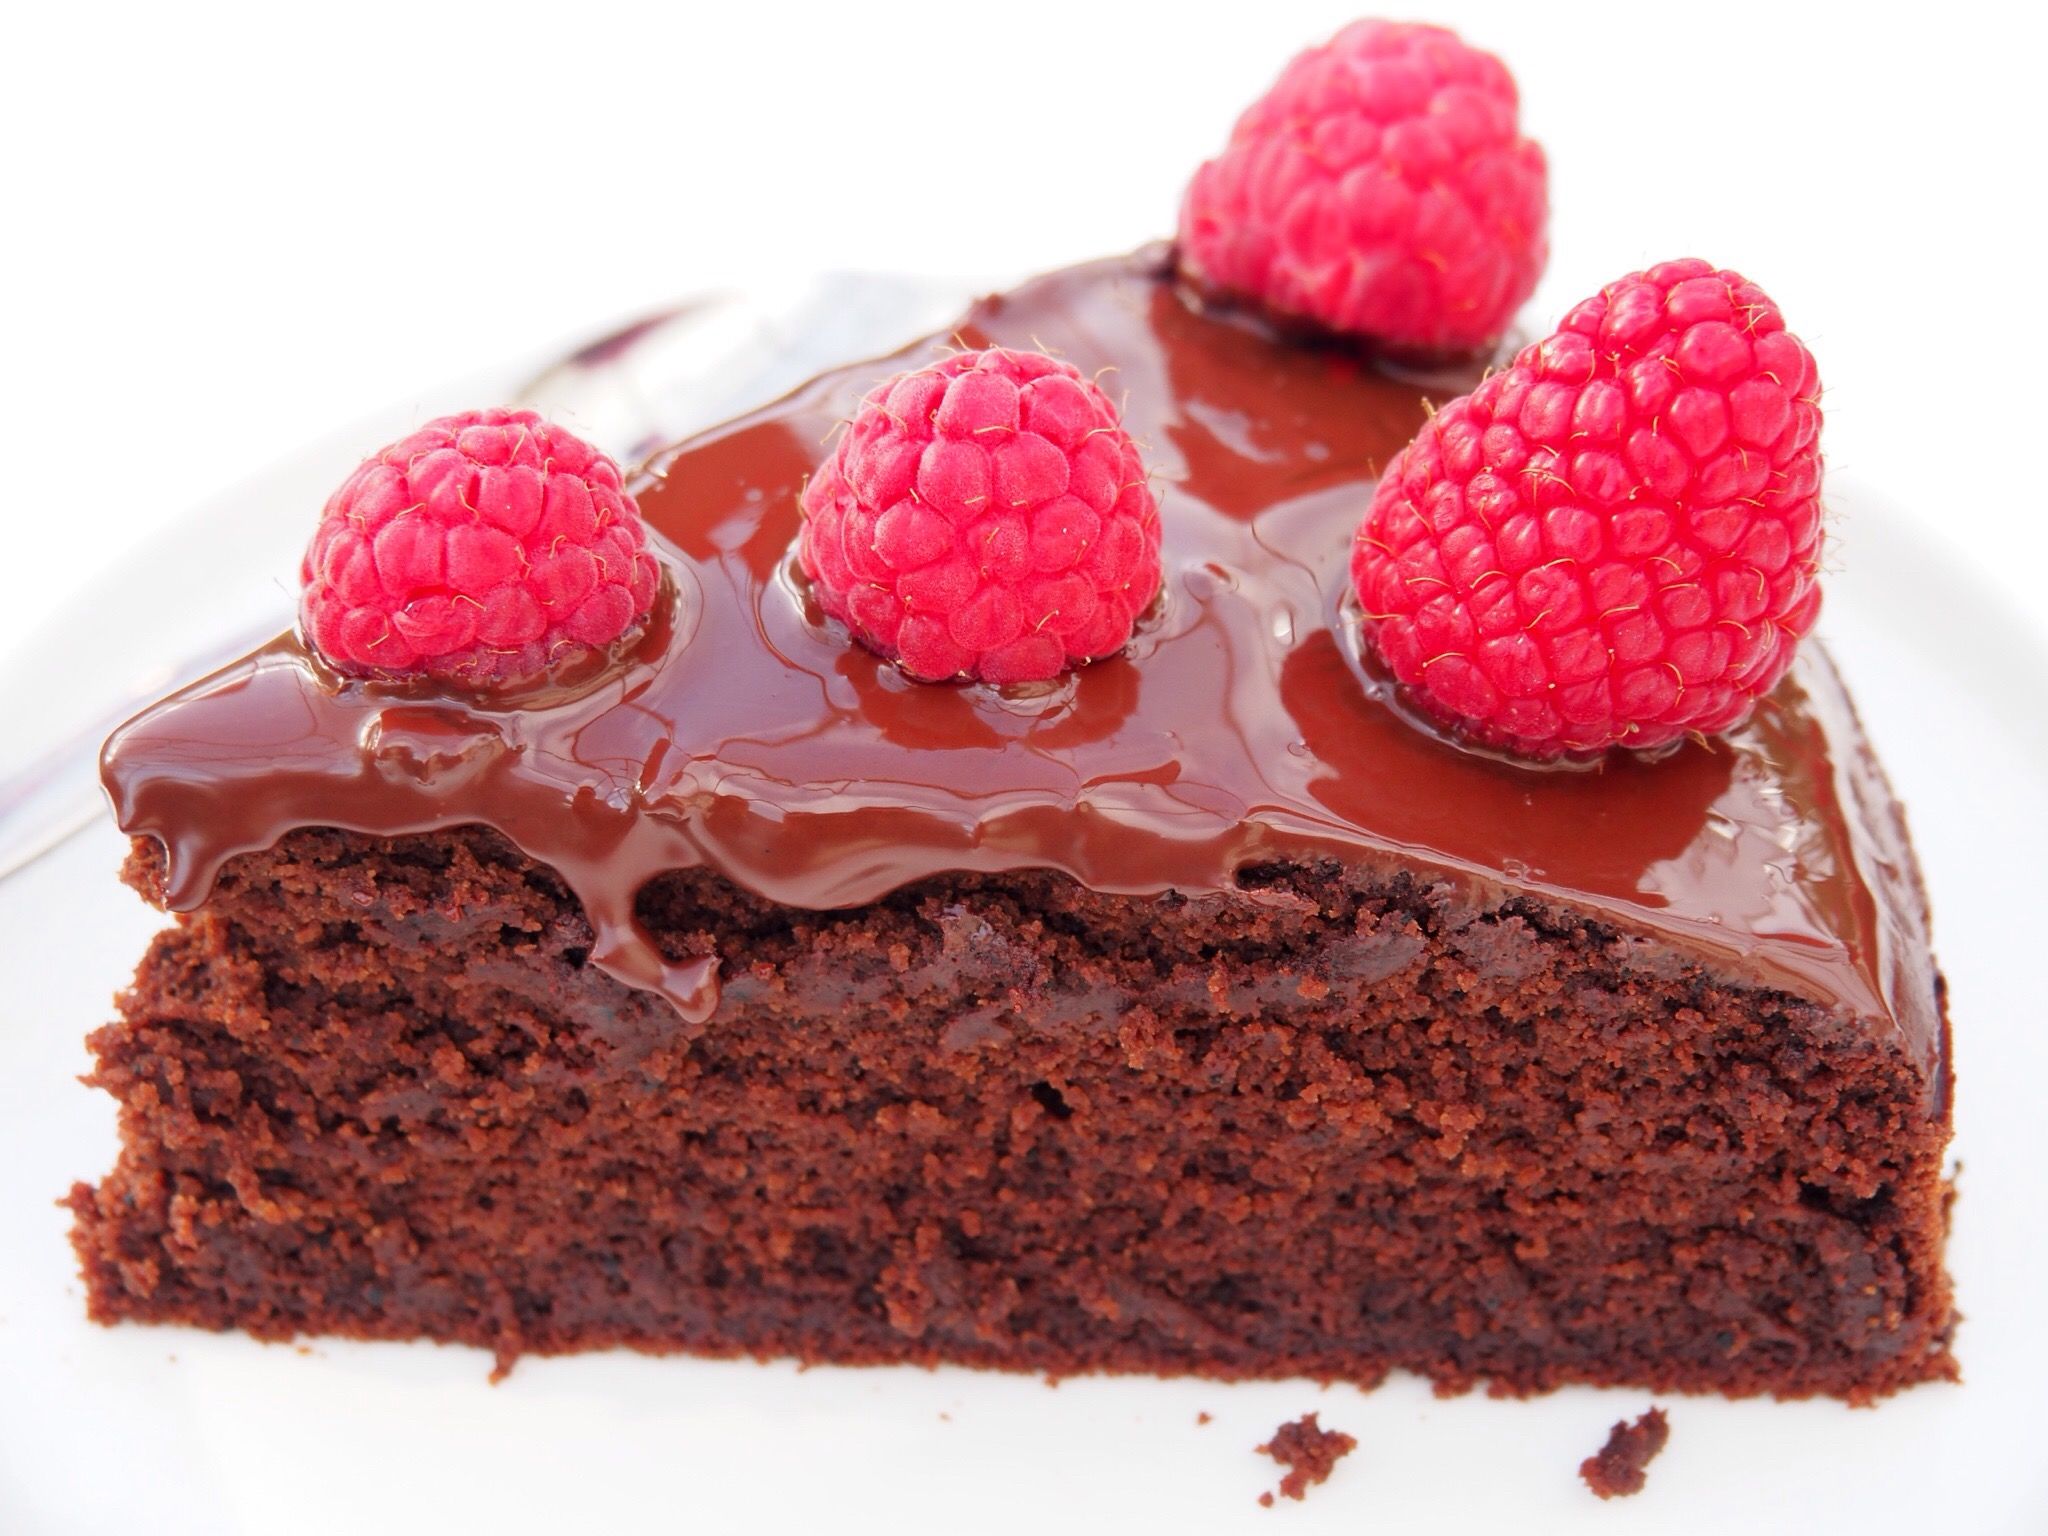 Vegan and Gluten-Free Chocolate Cake